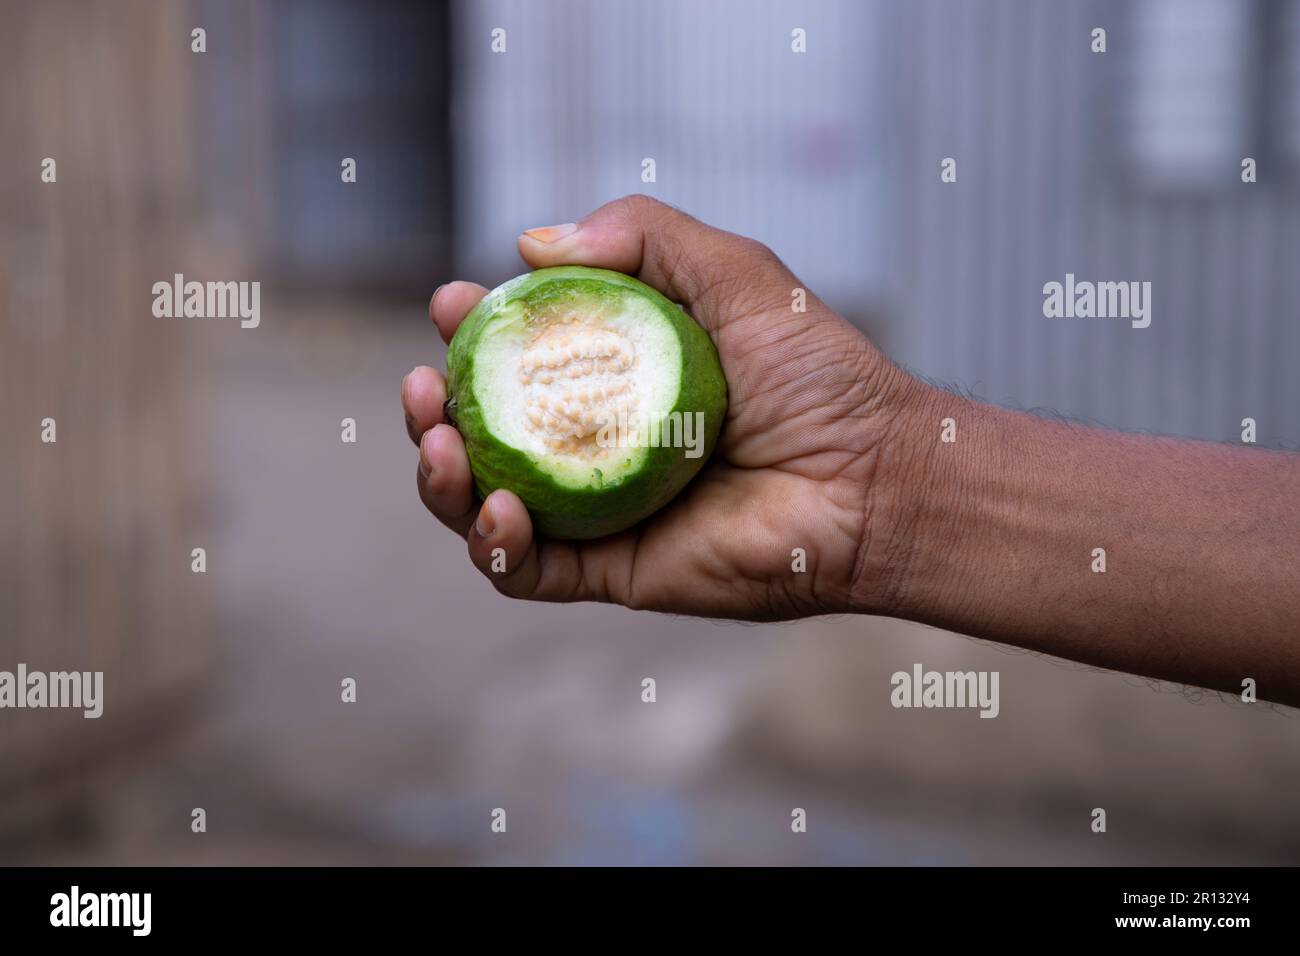 Bocconcini di guava a mano con profondità di campo poco profonda Foto Stock